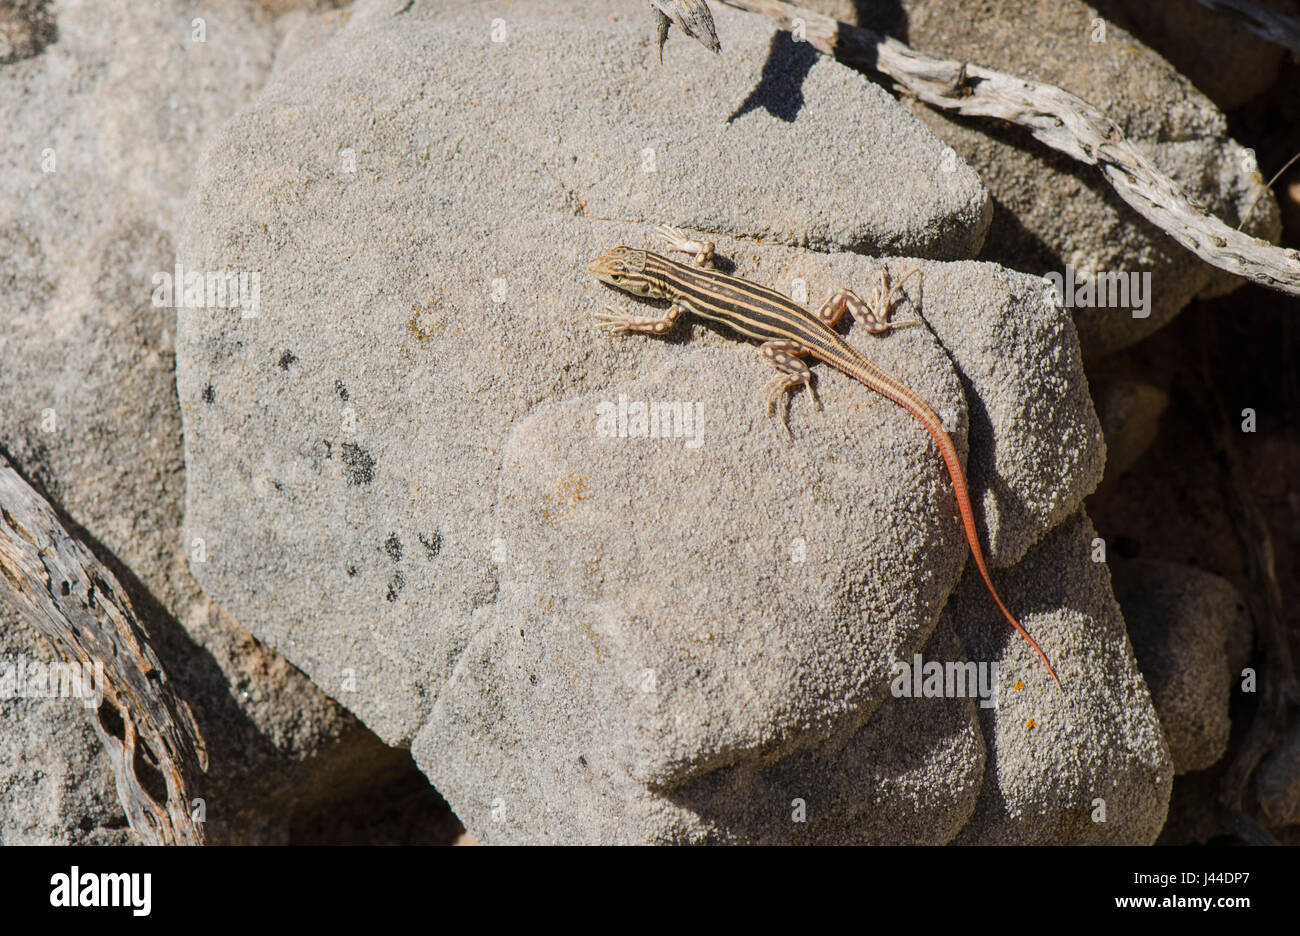 Juvenile stacheligen leichtfüßig Eidechse, Eidechsen, Reptil, Acanthodactylus Erythrurus sonnen sich auf Felsen. Andalusien, Spanien. Stockfoto